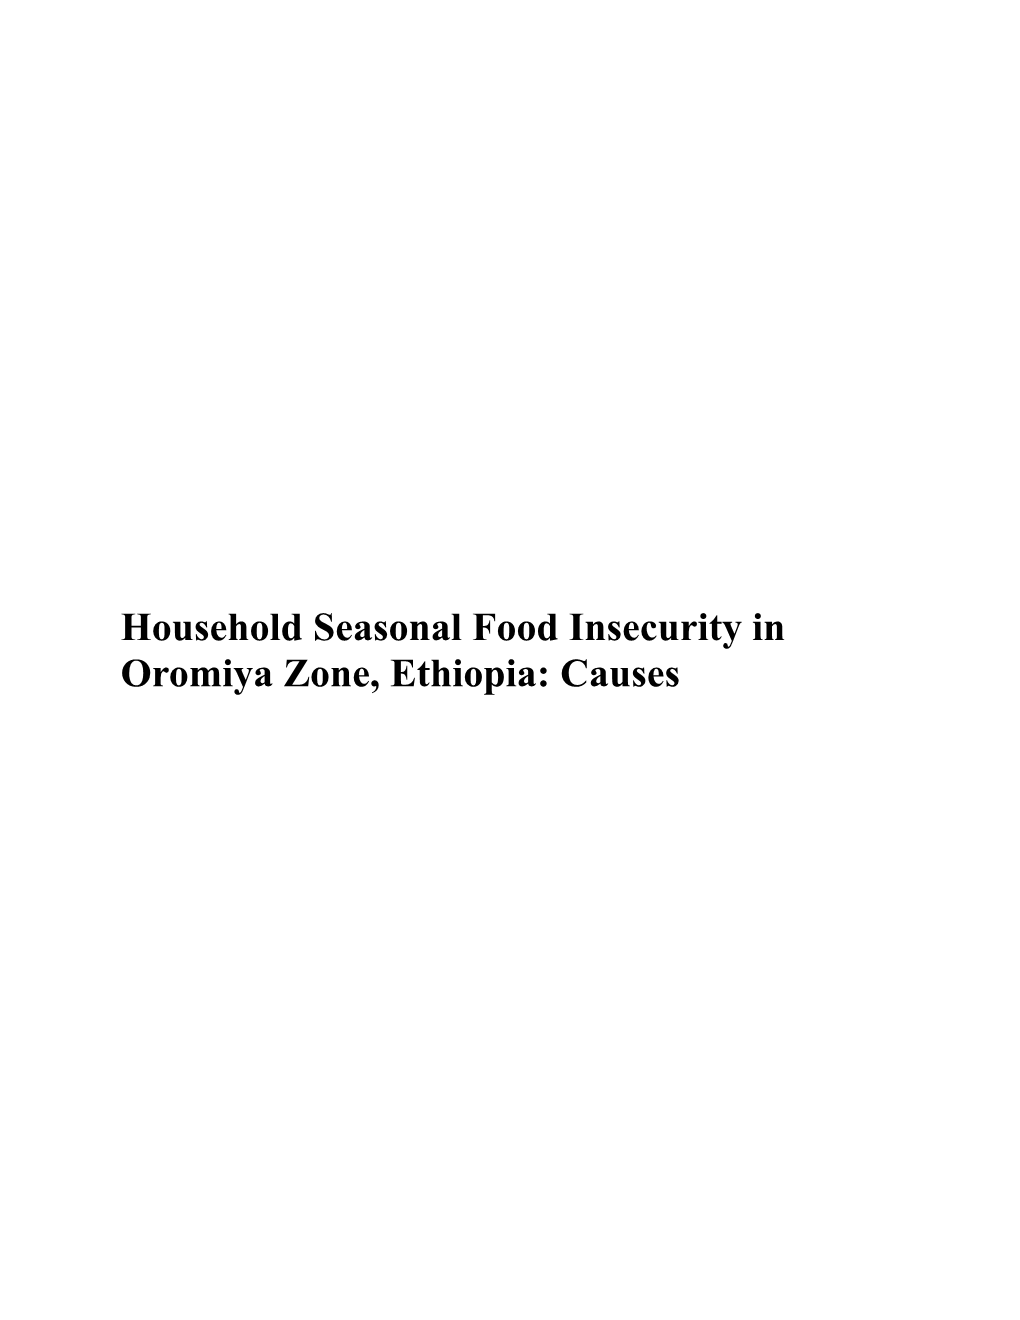 Household Seasonal Food Insecurity in Oromiya Zone, Ethiopia: Causes